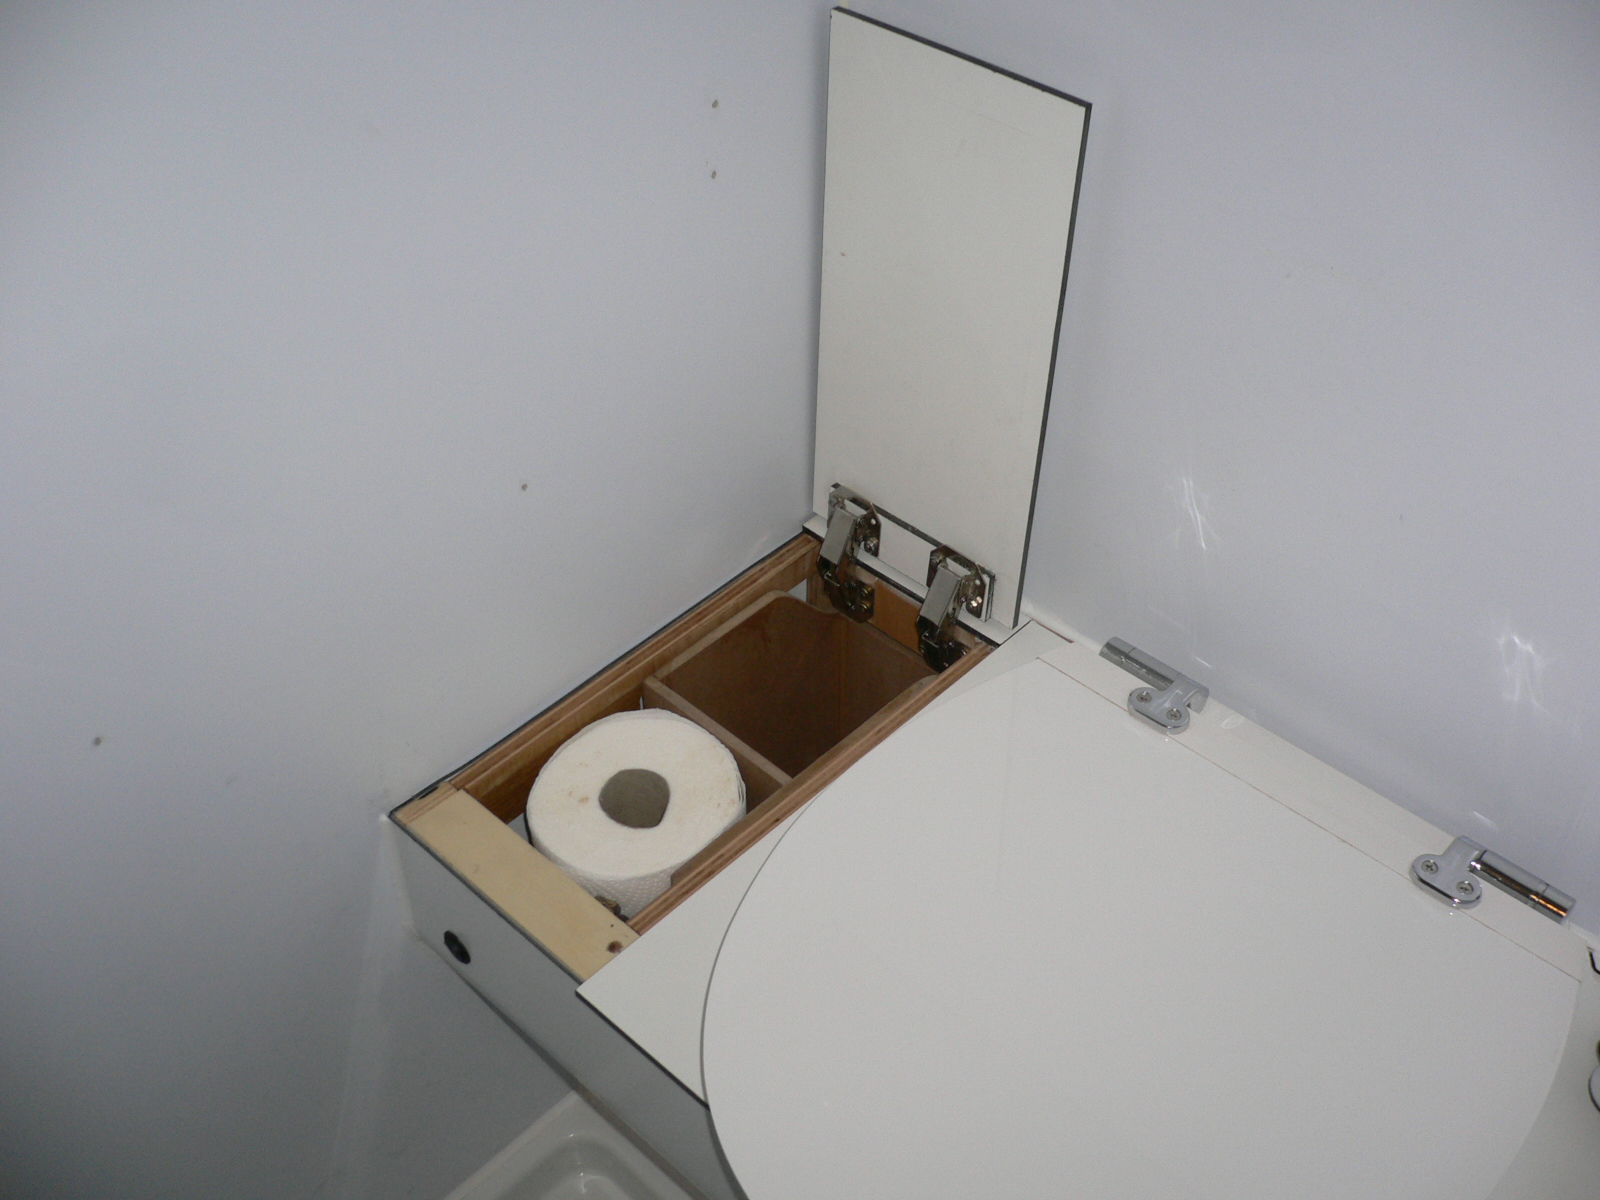 Vorratsbehälter (hinten Kleintierstreu, vorne Küchenrolle oder Toilettenpapier)